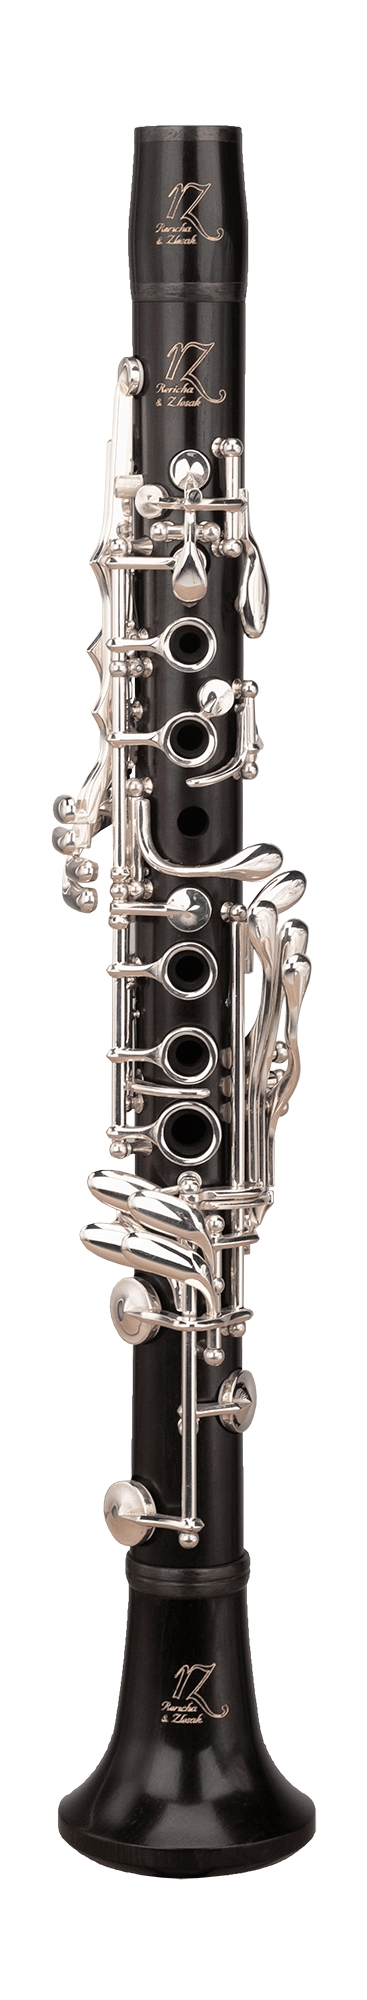 RZ Bohema er den første legendariske profesjonelle klarinettmodellen fra RZ.
Et instrument med en ekstraordinær kombinasjon av komfort, egal intonasjon og en vakker 